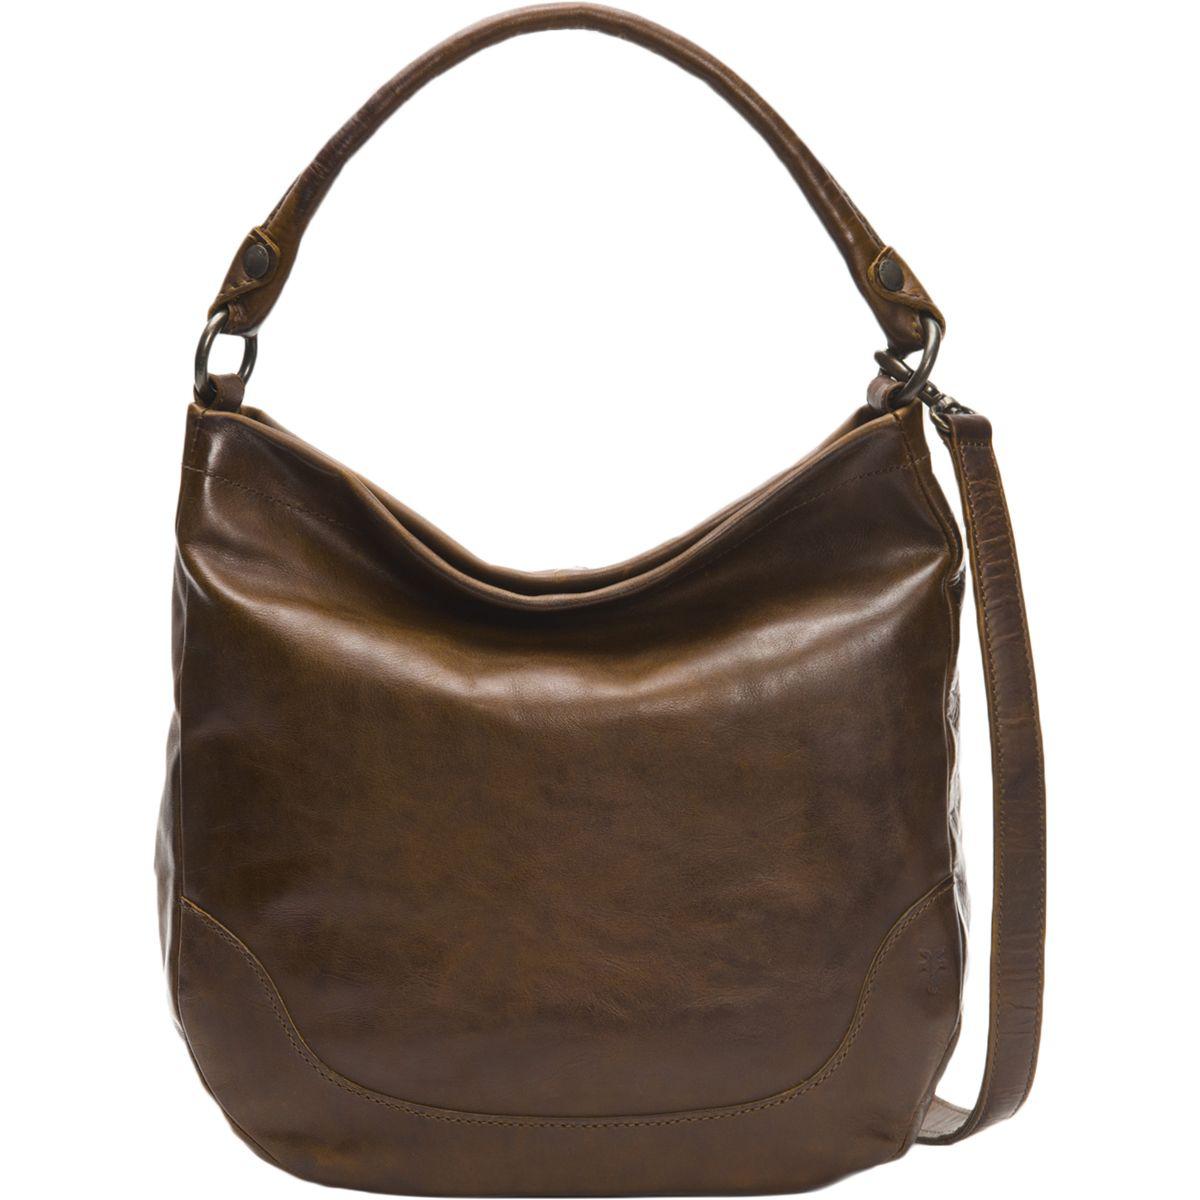 Frye Leather Melissa Hobo Bag in Dark Brown (Brown) - Lyst